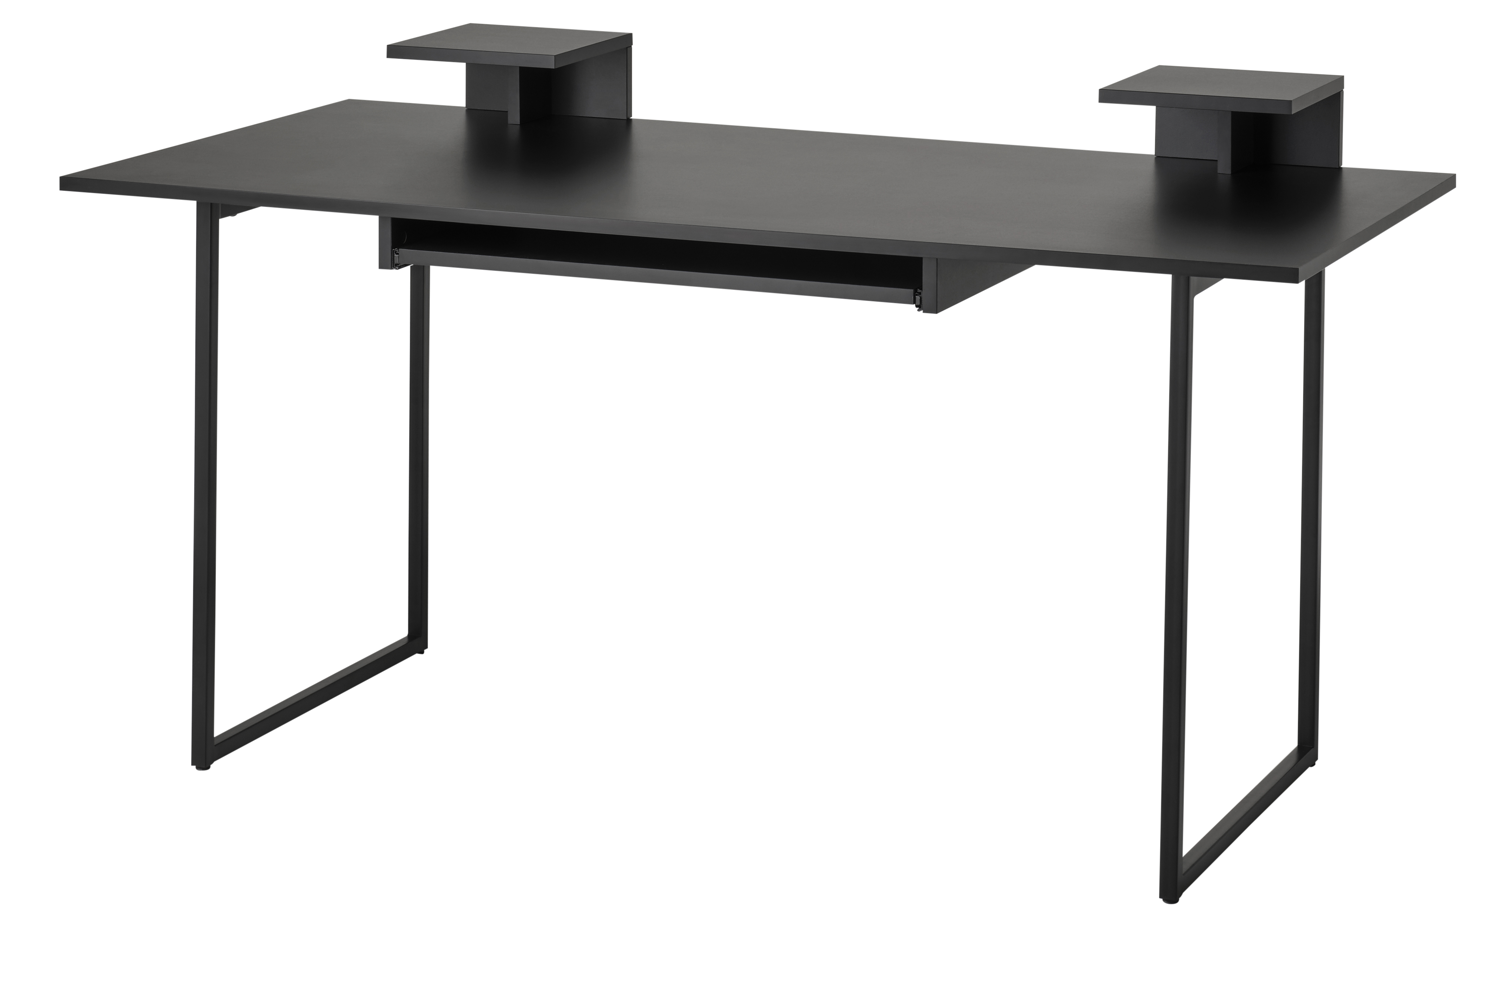 IKEA_OBËGRANSAD desk €149